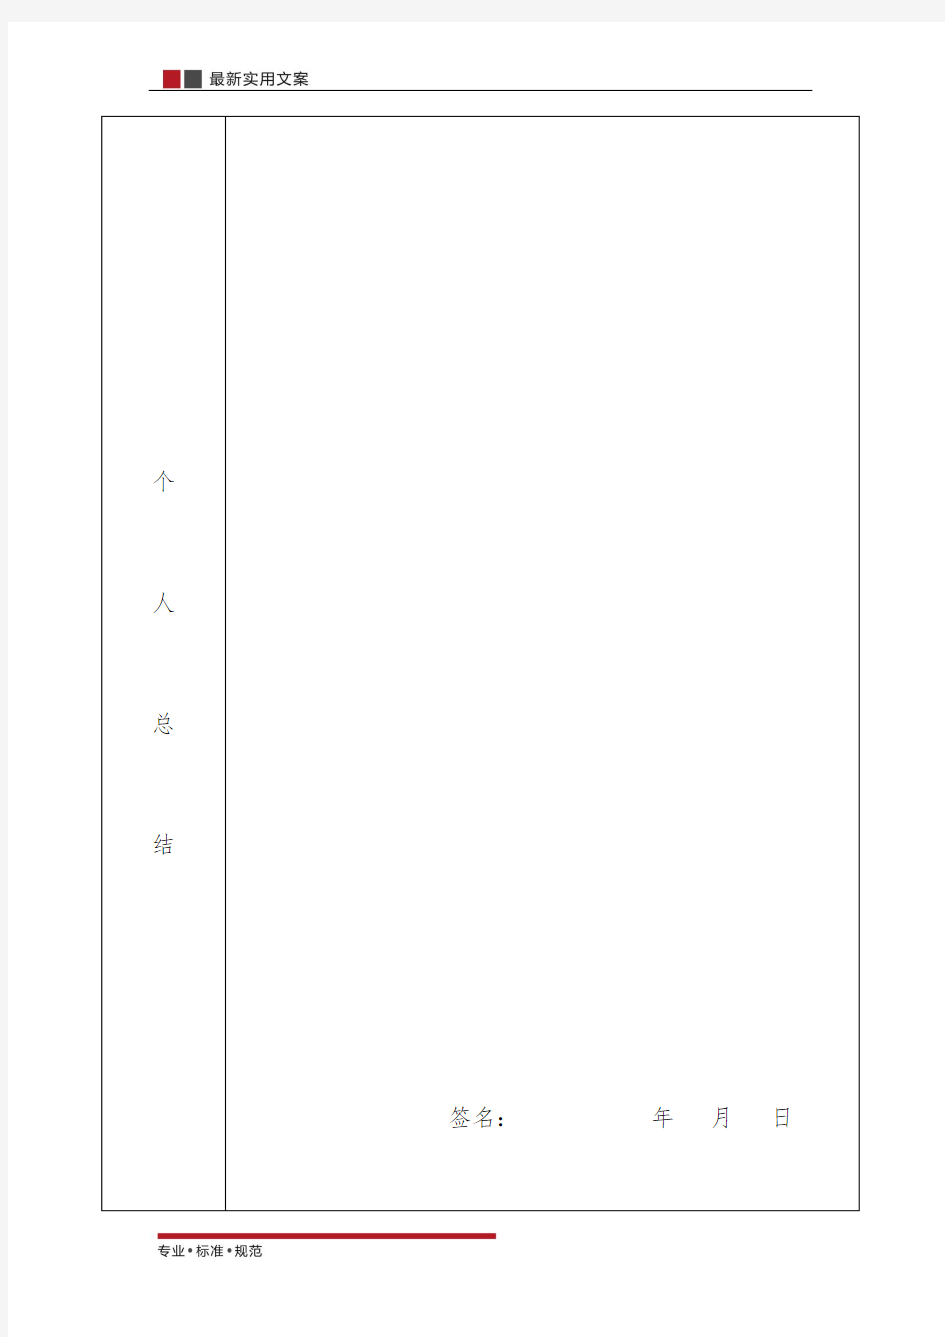 【范本】2015年公务员年度考核登记表(标准模板)